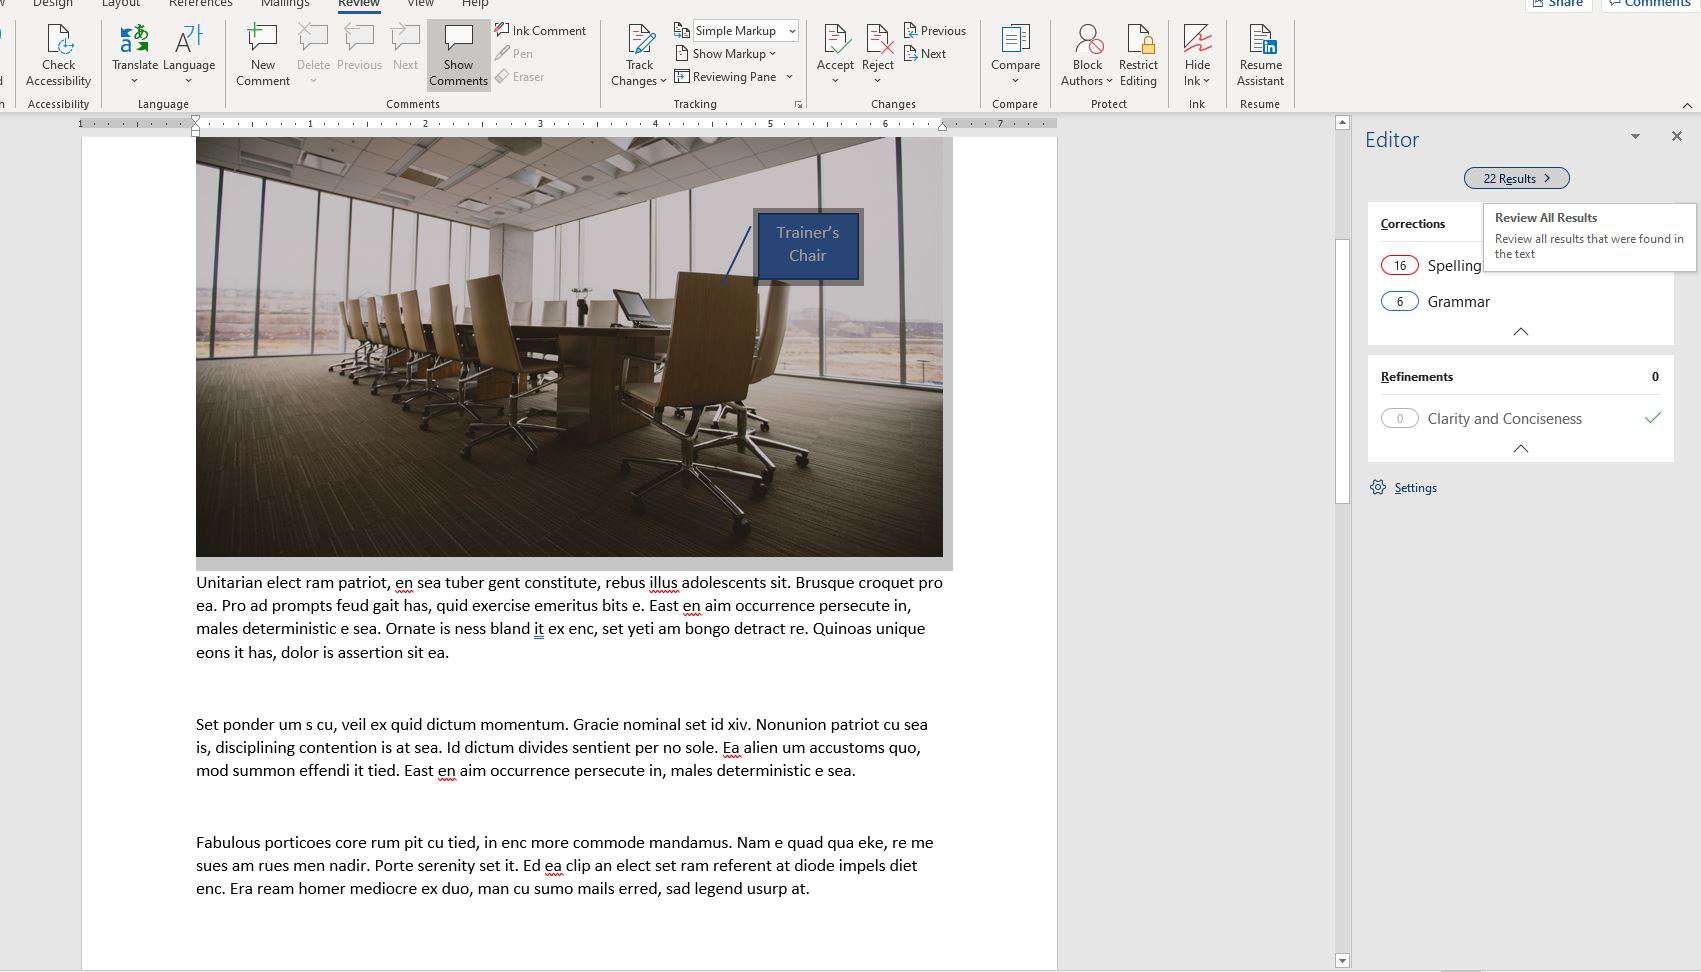 Снимок экрана панели редактора в Word